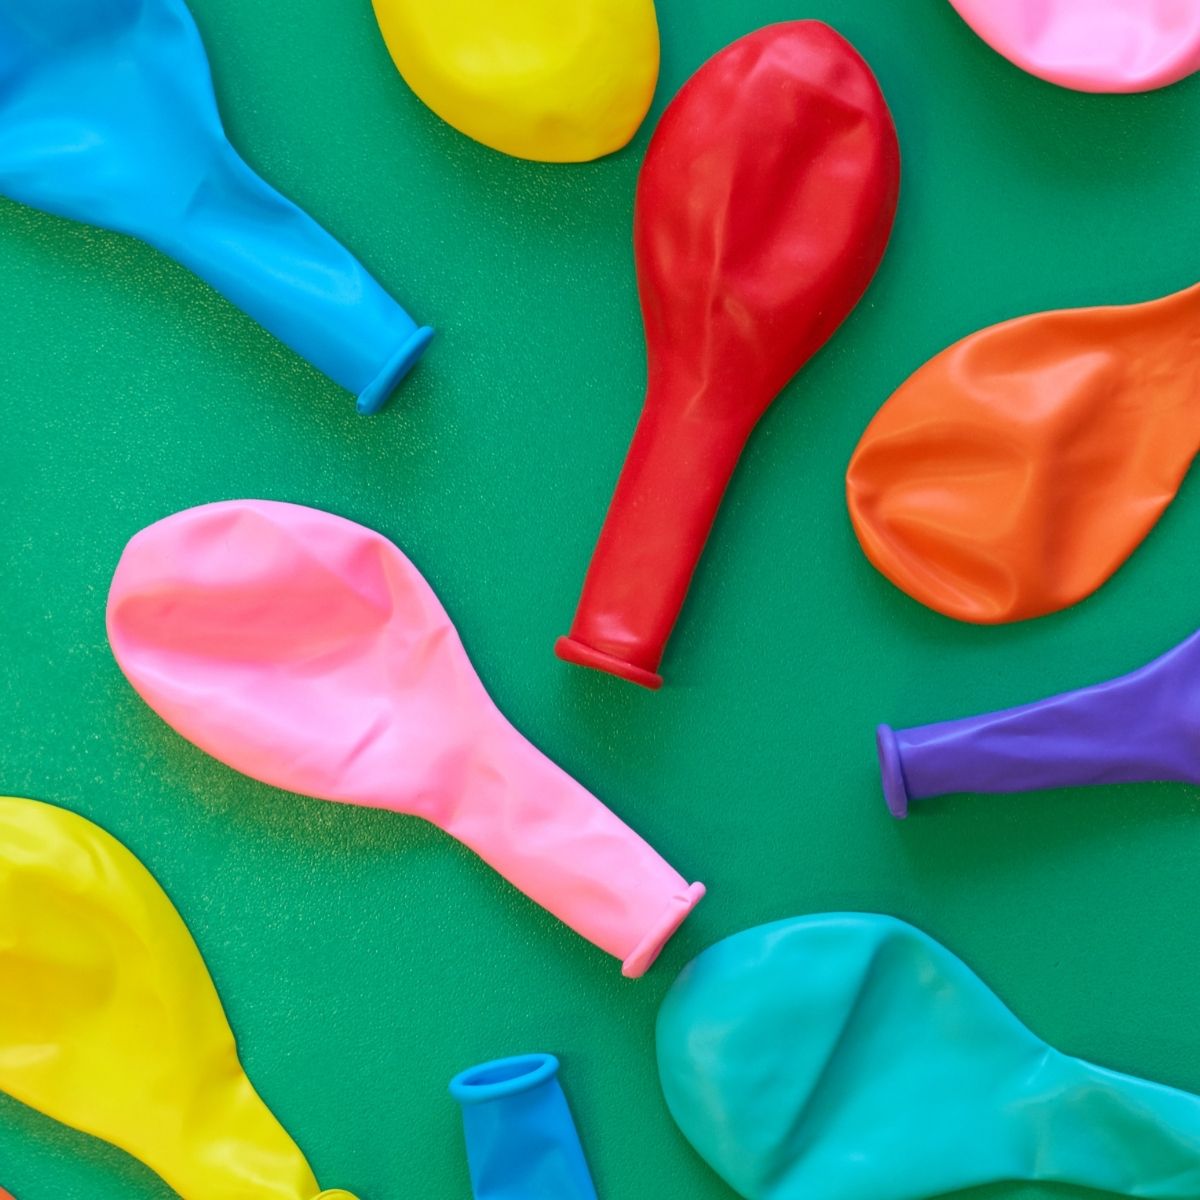  بلک میں تھوک غبارے خریدنے کے لیے 7 بہترین مقامات